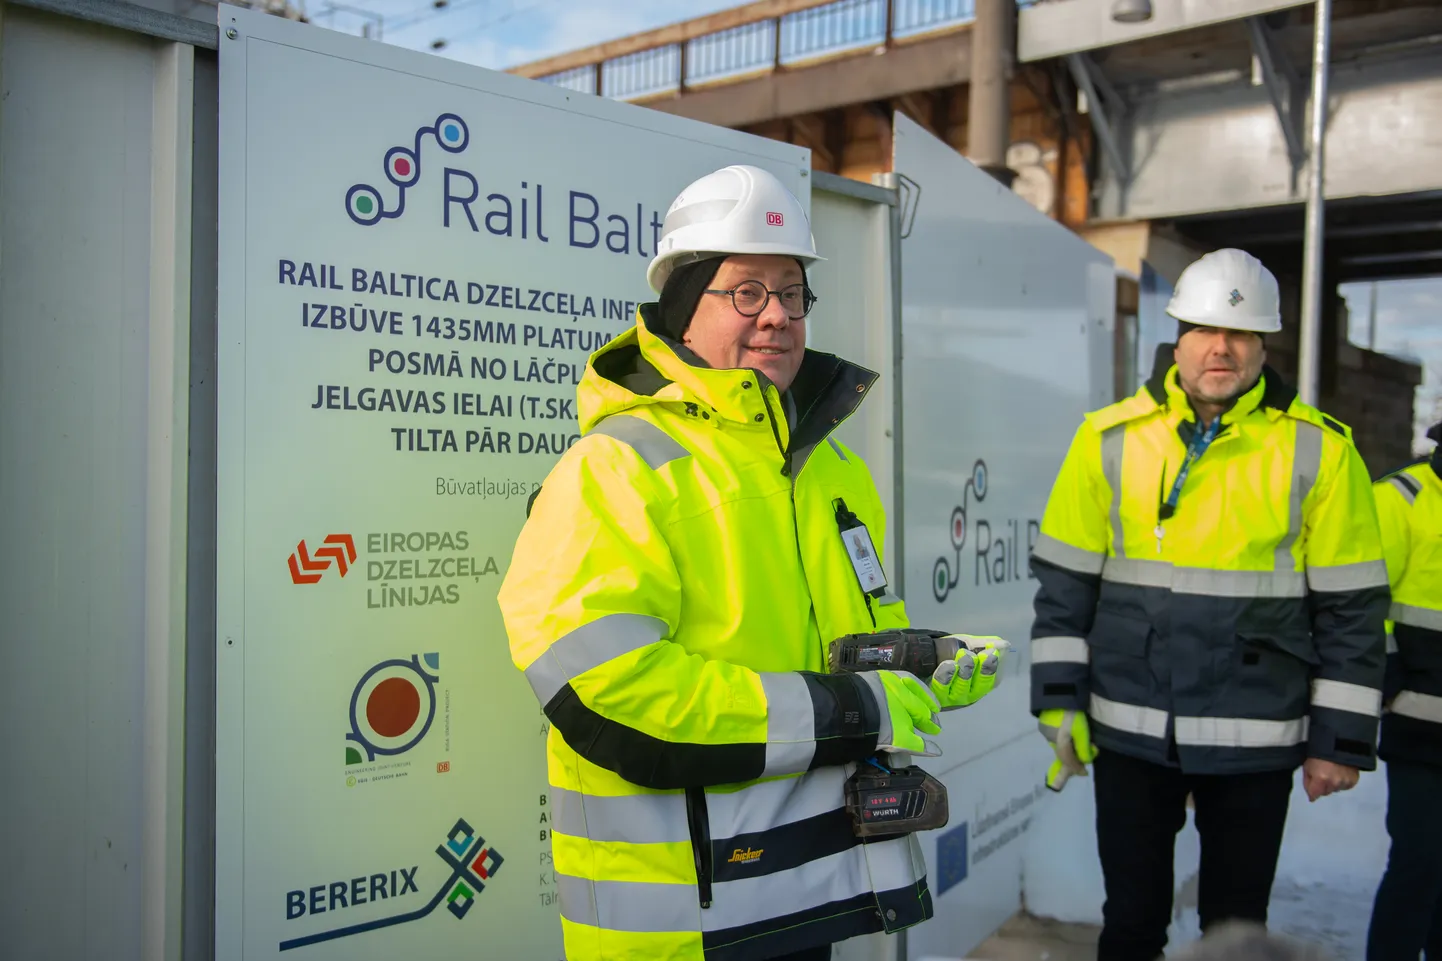 Tikšanās starp medijiem un Eiropas dzelzceļa līniju un būvniecības firmu BERERIX par Rail Baltica dzelzceļa tilta pār Daugavu izbūvi